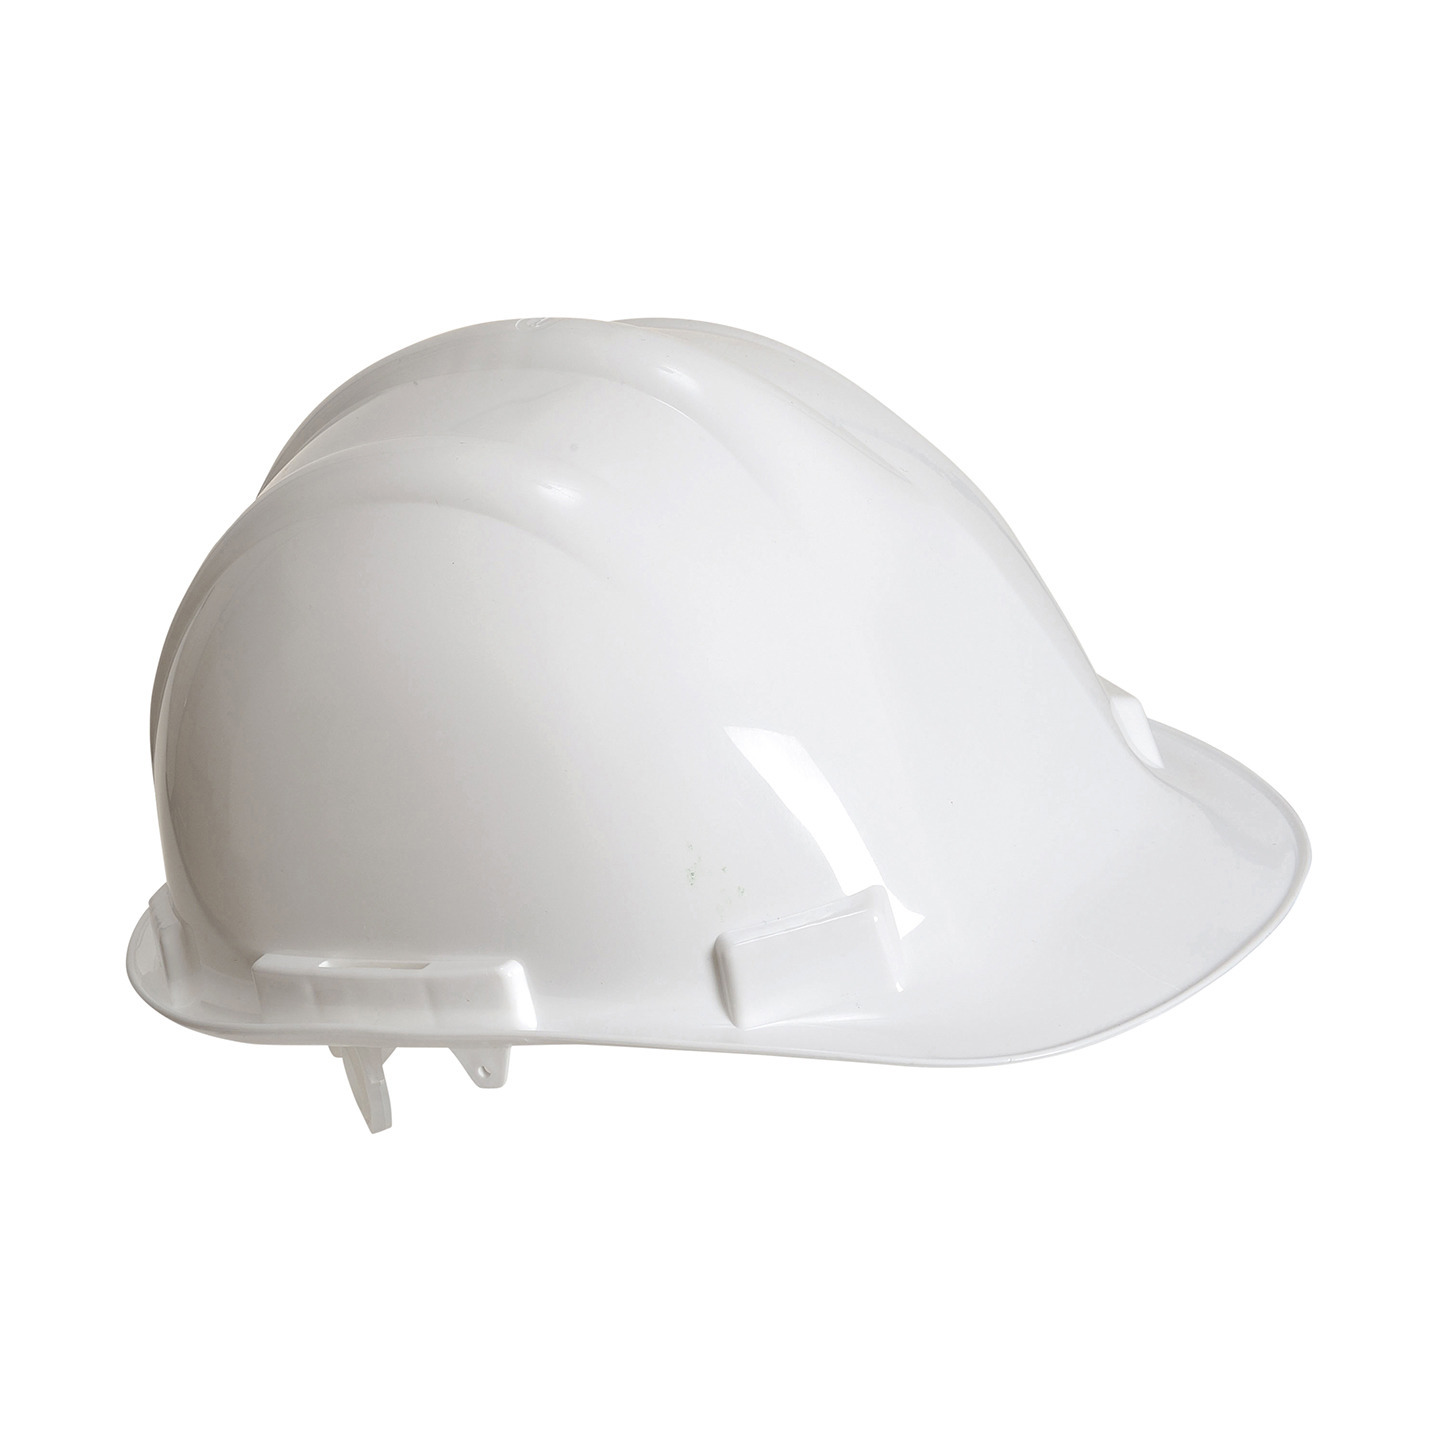 Set van 4x stuks veiligheidshelmen-bouwhelmen hoofdbescherming wit verstelbaar 55-62 cm